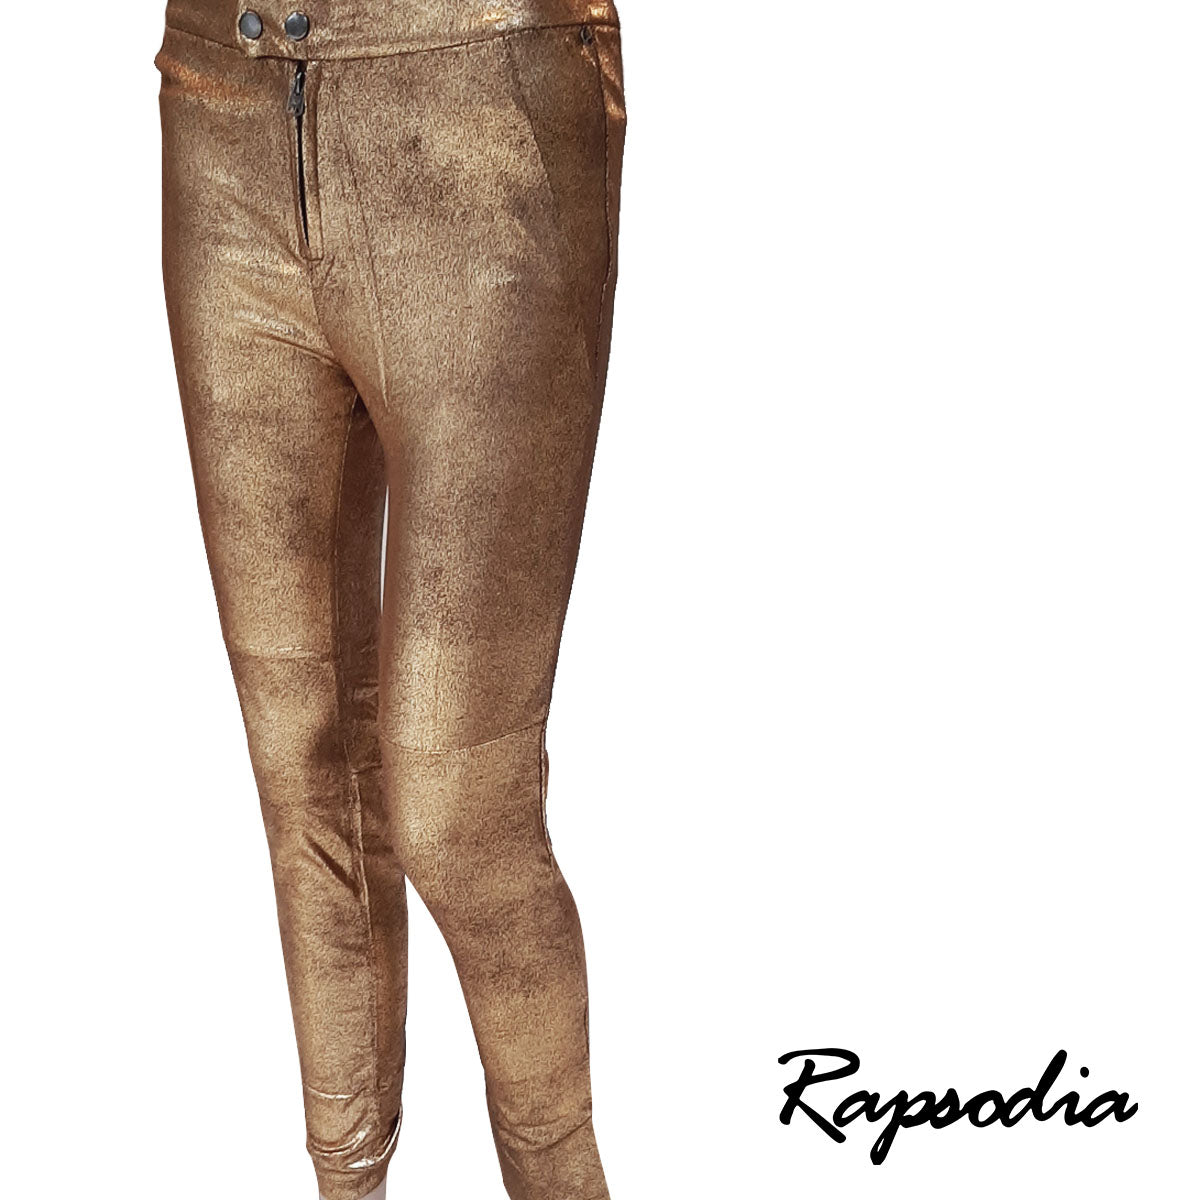 Pantalon Rapsodia Cox Shiny Dorado